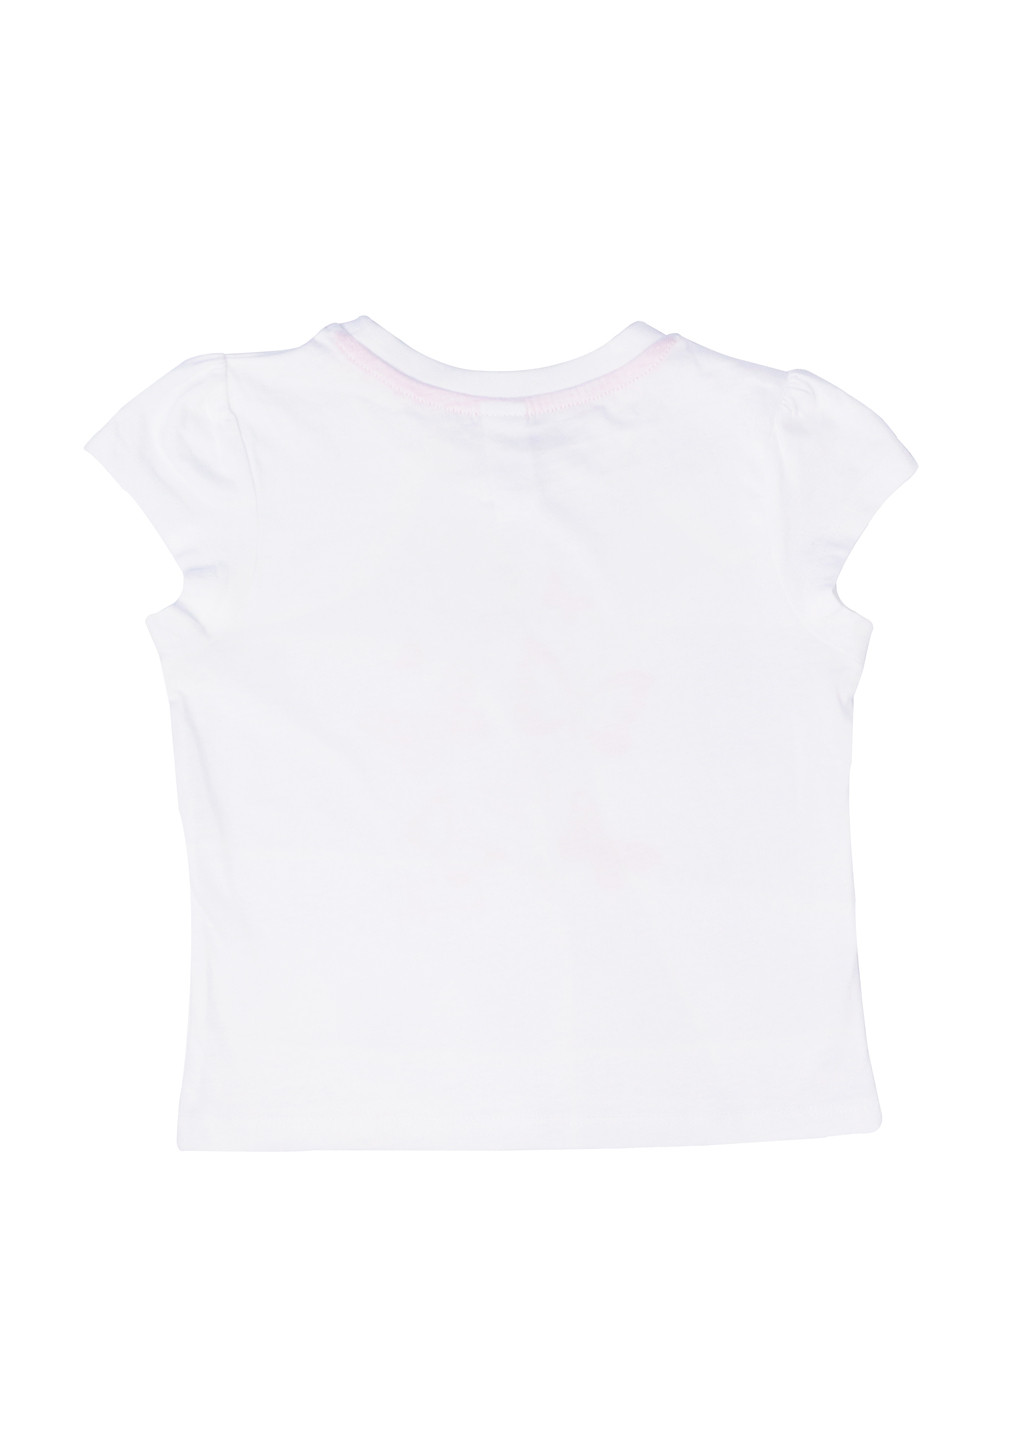 Комбинированная детская летняя пижама для девочки в бабочки 98-104 белый-розовый Palomino